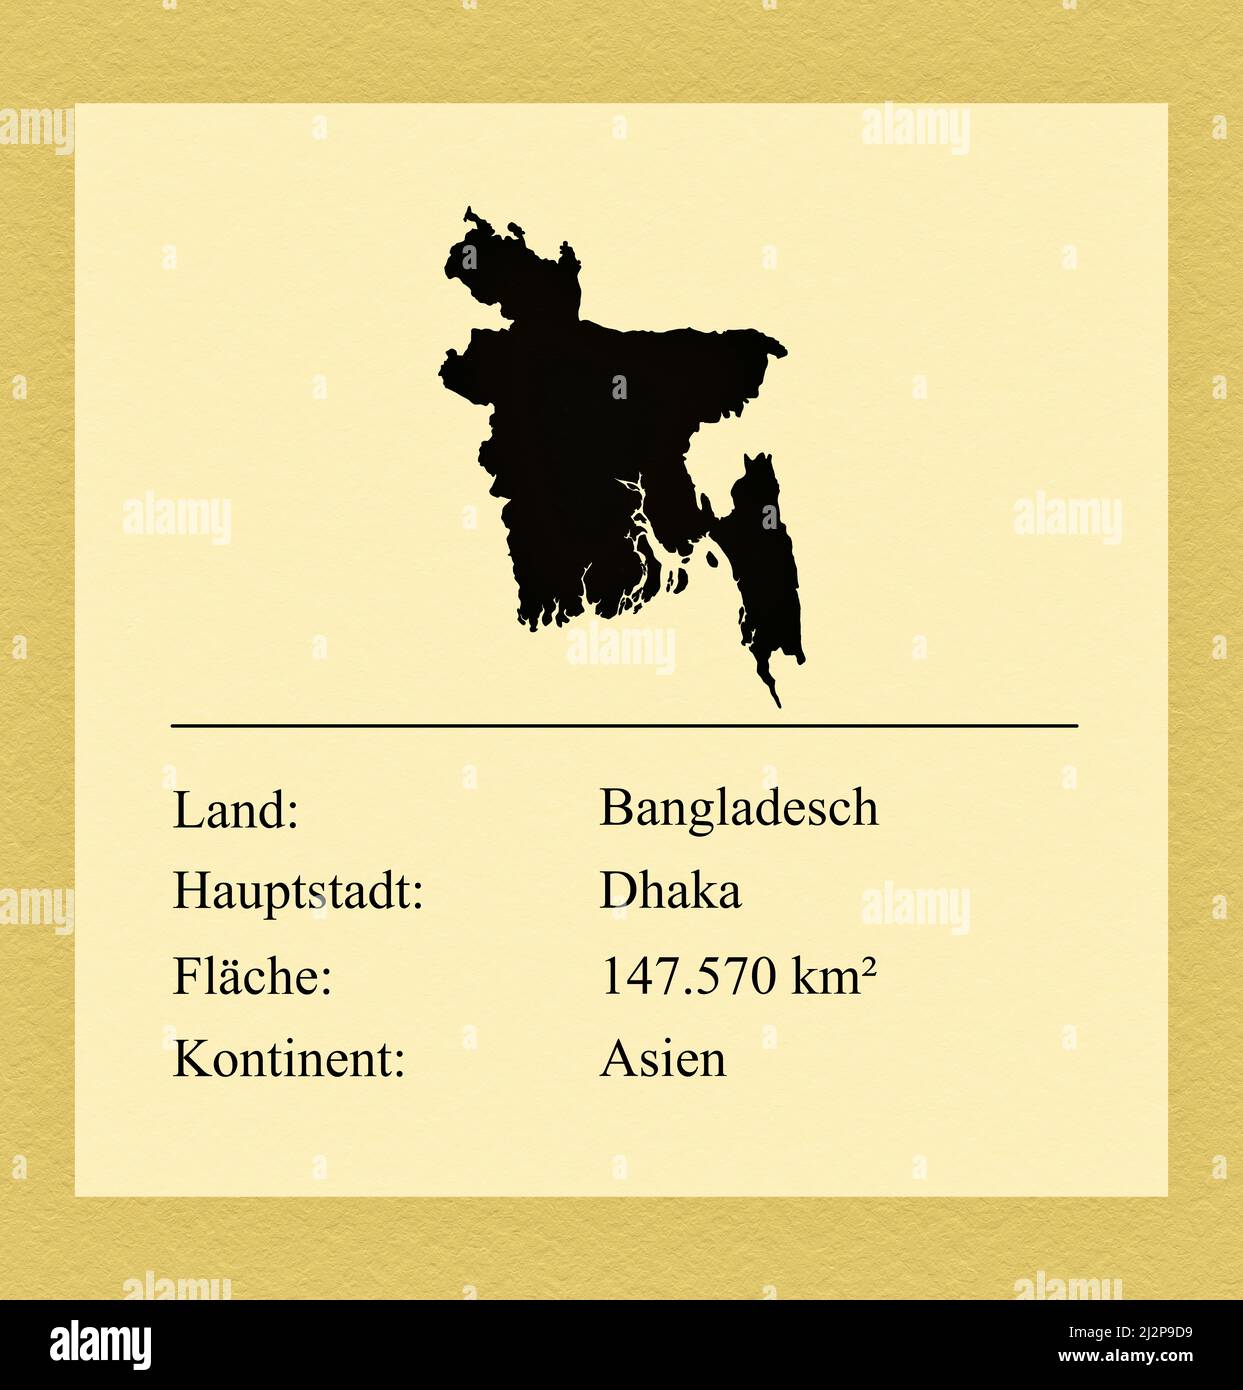 Umrisse des Landes Bangladesh, darunter ein kleiner Steckbrief mit Ländernamen, Hauptstadt, Fläche und Kontinent Foto de stock